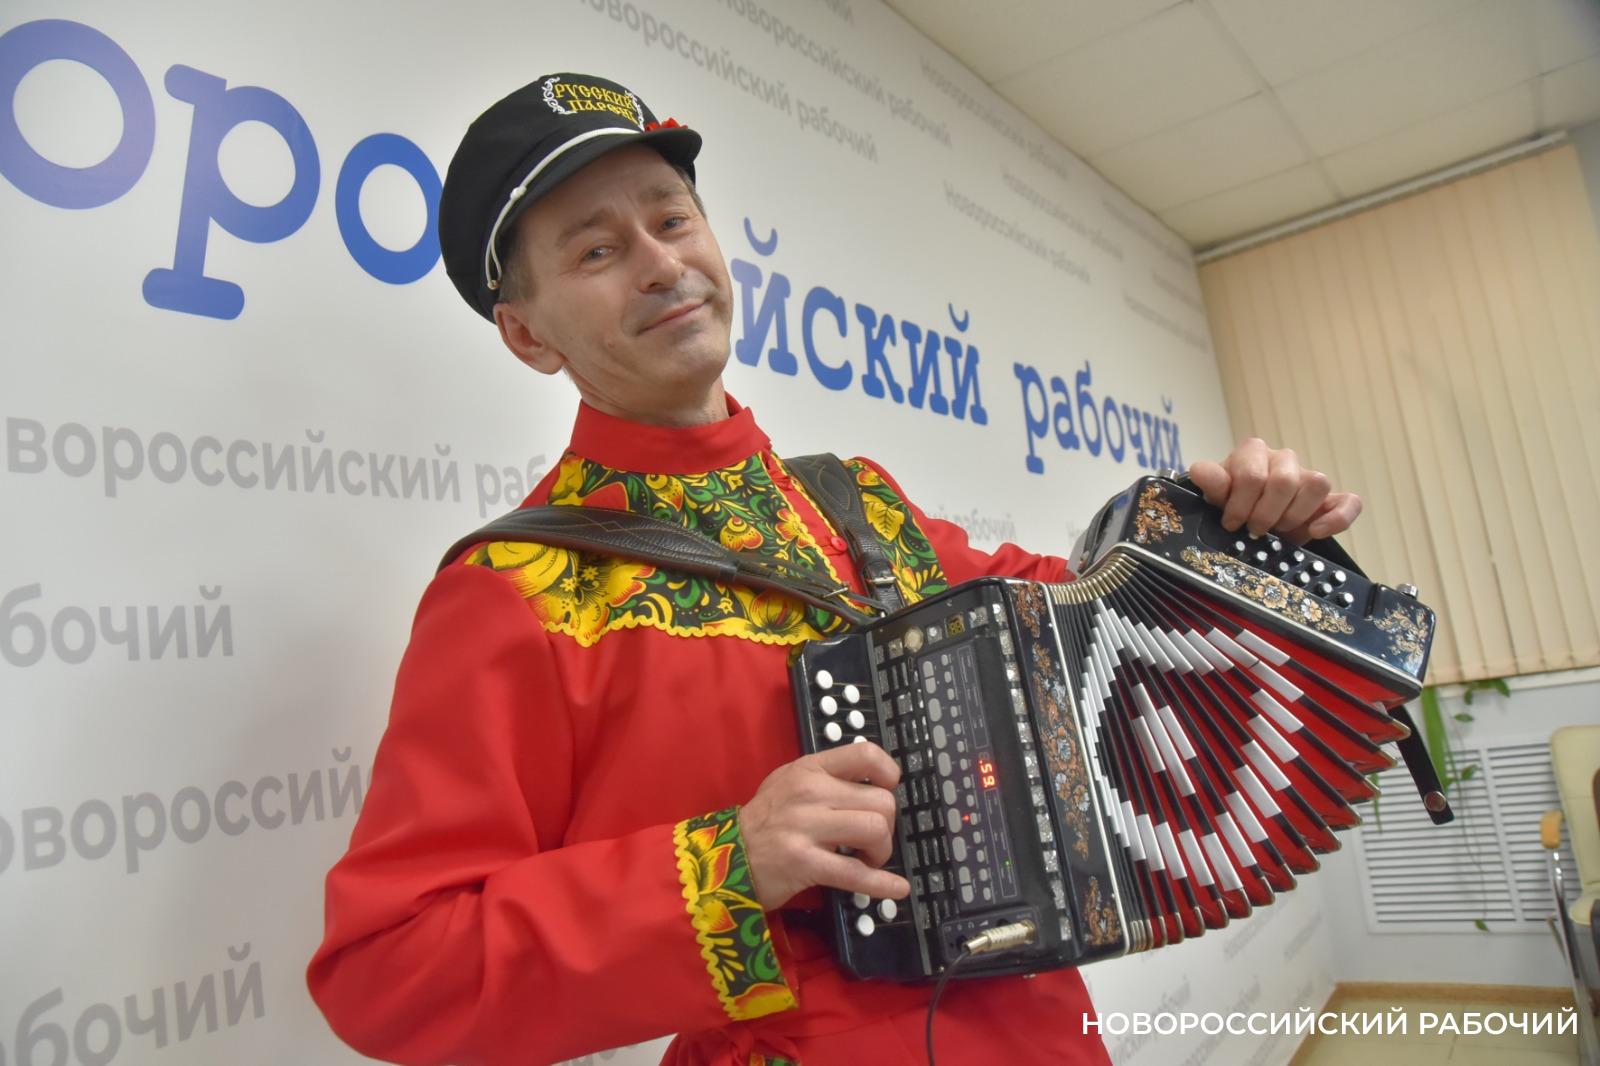 Гармонист из Новороссийска сыграет для всей страны на передаче Андрея Малахова